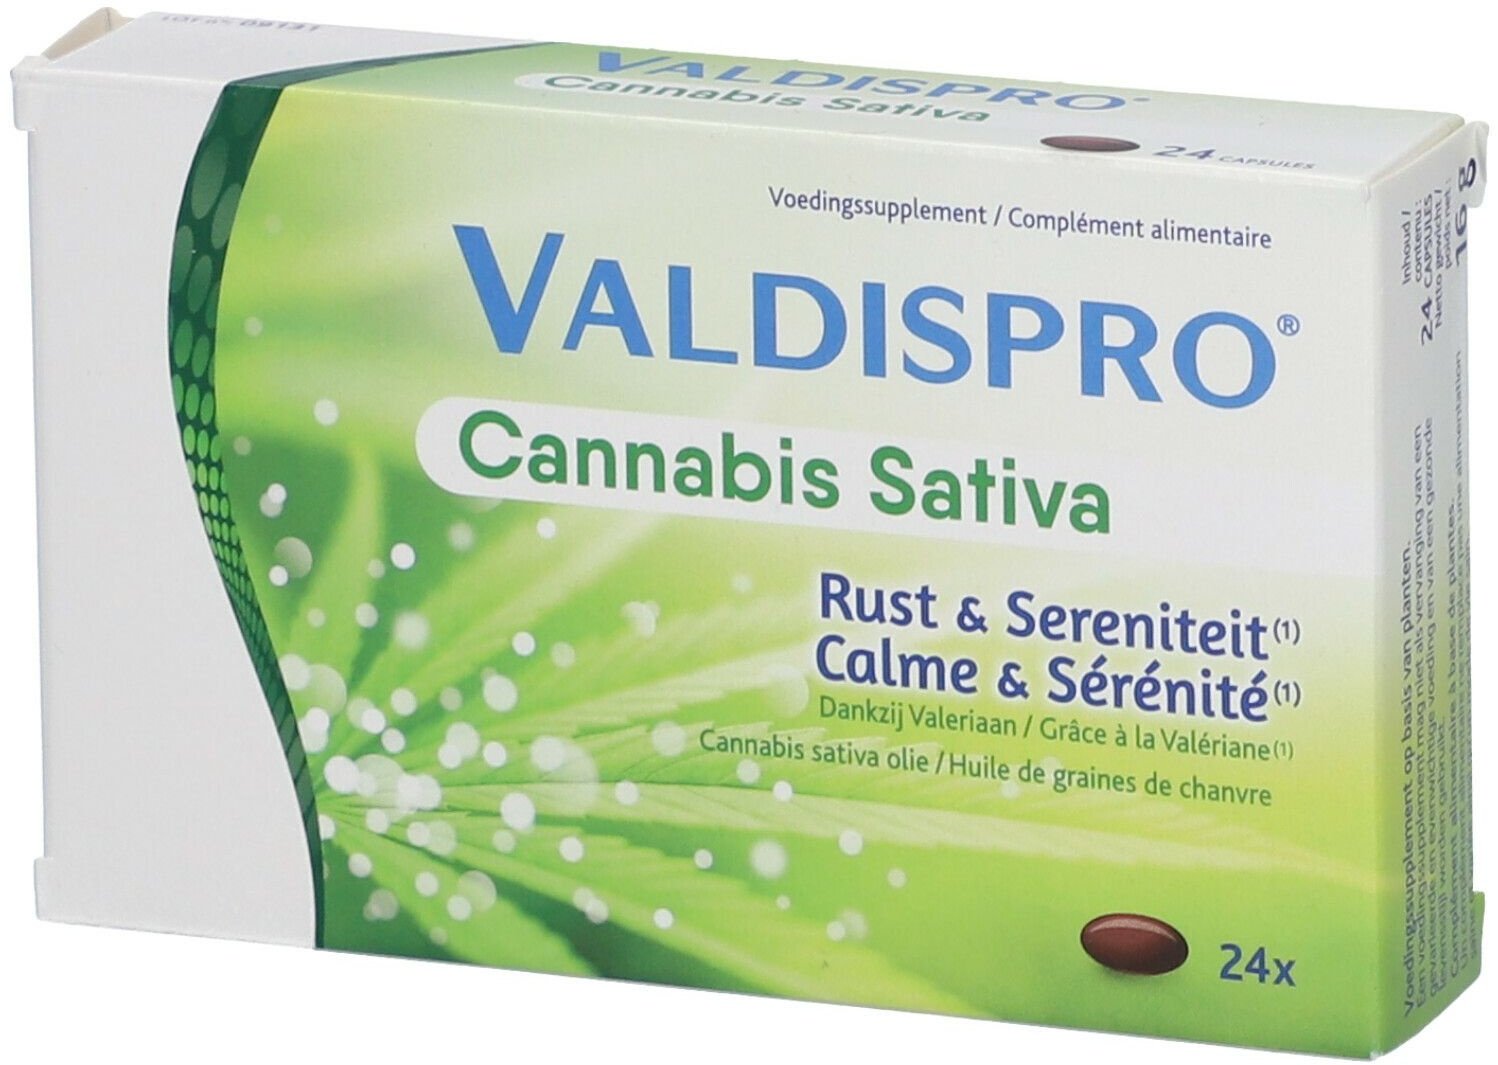 Valdispro® Cannabis Sativa 24 pc(s) capsule(s)